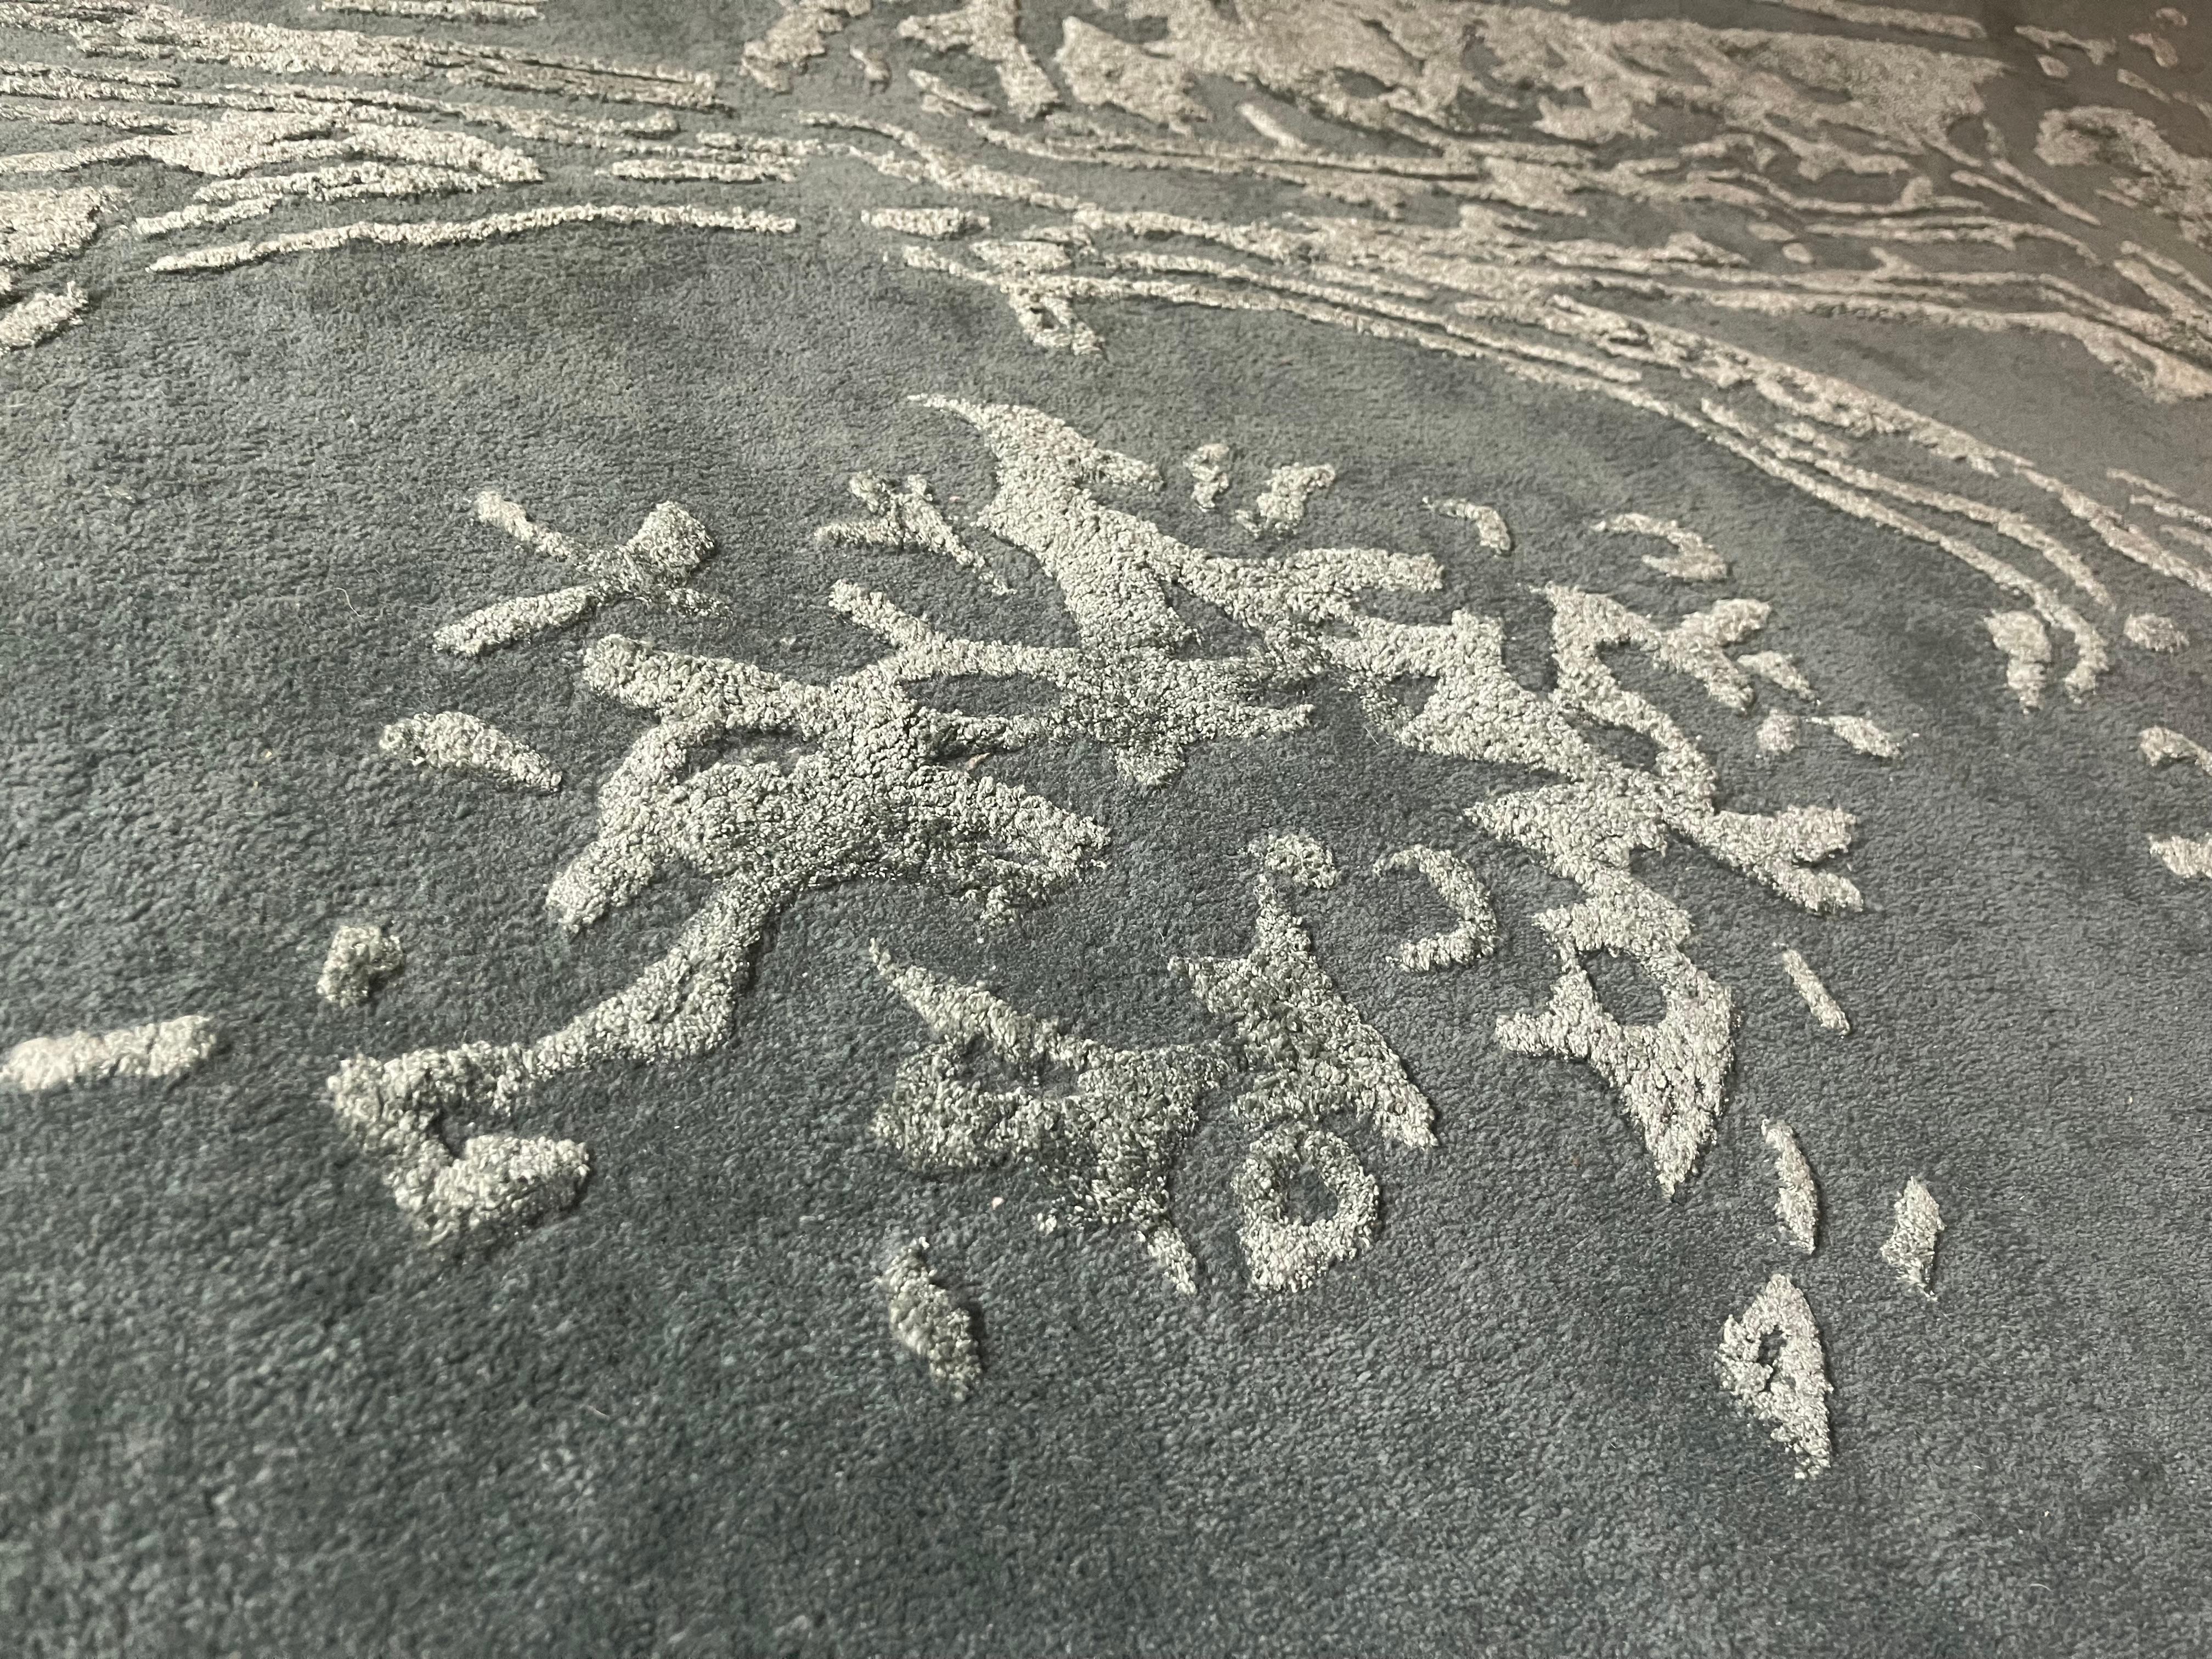 Dieser Teppich ist handgetuftet in Premium Qualität. Die besten Materialen, wie hochwertige Neuseelandwolle und Tencel werden verarbeitet. Eine integrierte rutschfeste Unterlage sorgt für super Laufgefühl und wirkt extrem schalldämmend. Dieses